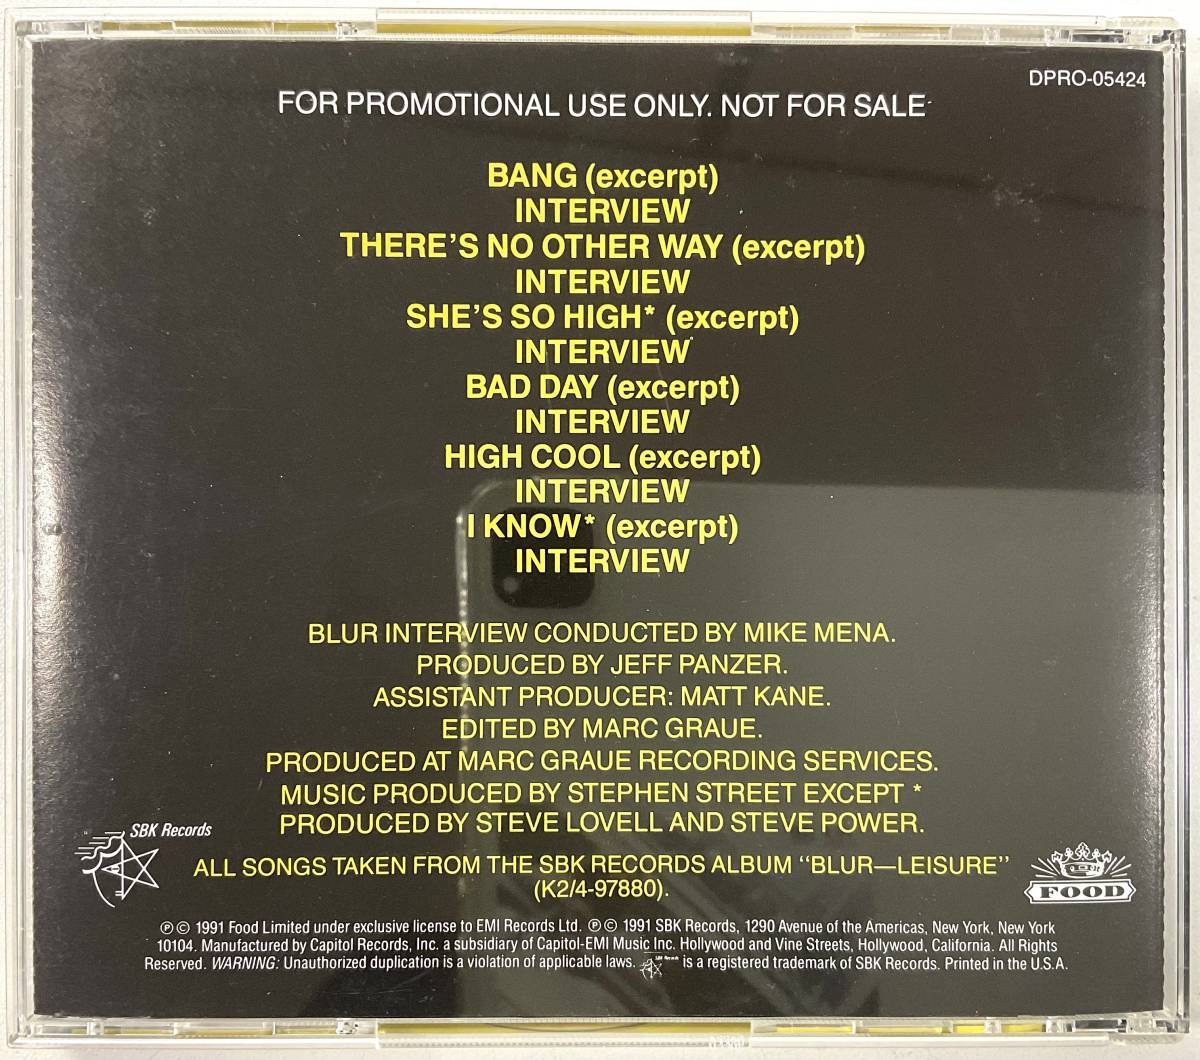  не использовался запись не продается радиовещание отдел для промо запись Blur Focus in With INTERVIEW AND MUSIC CD Promotional Use Only NOT FOR SALE редкость запись трудно найти 